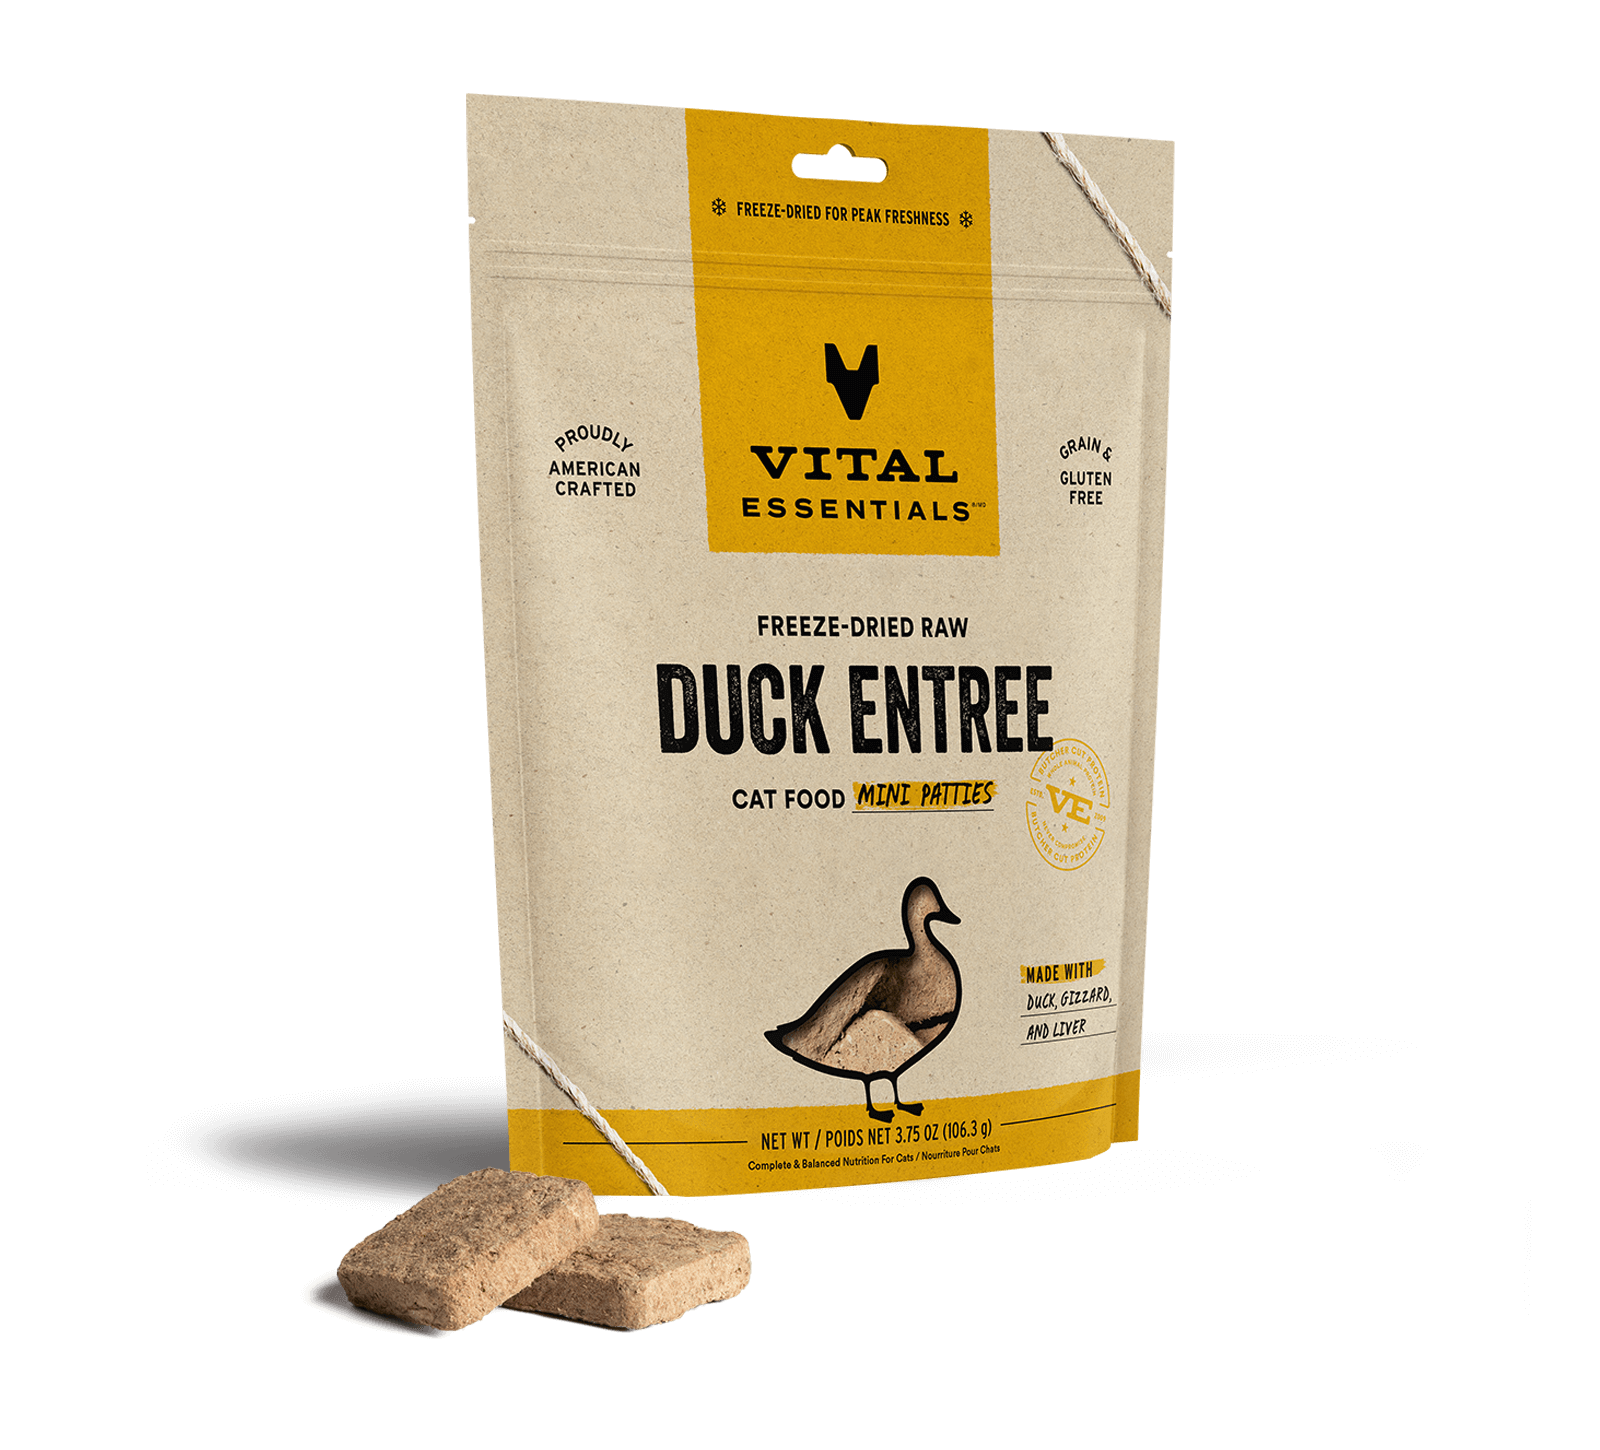 Vital Essentials Freeze-Dried Raw Duck Entree Cat Food Mini Patties, 3.75 oz - Health/First Aid